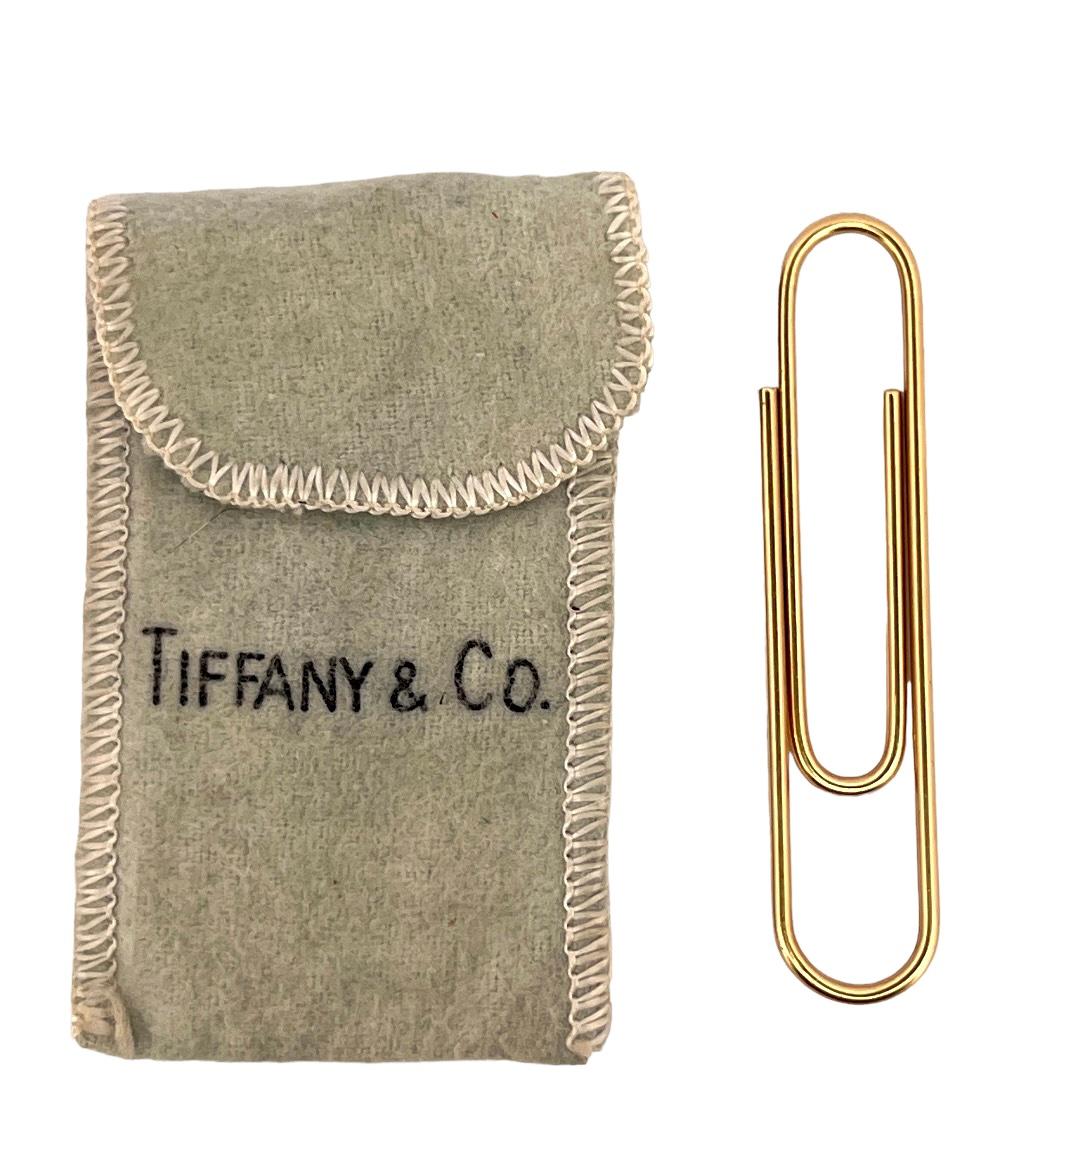 Tiffany & Co. Gold Paper Clip Bookmark Pendant 1